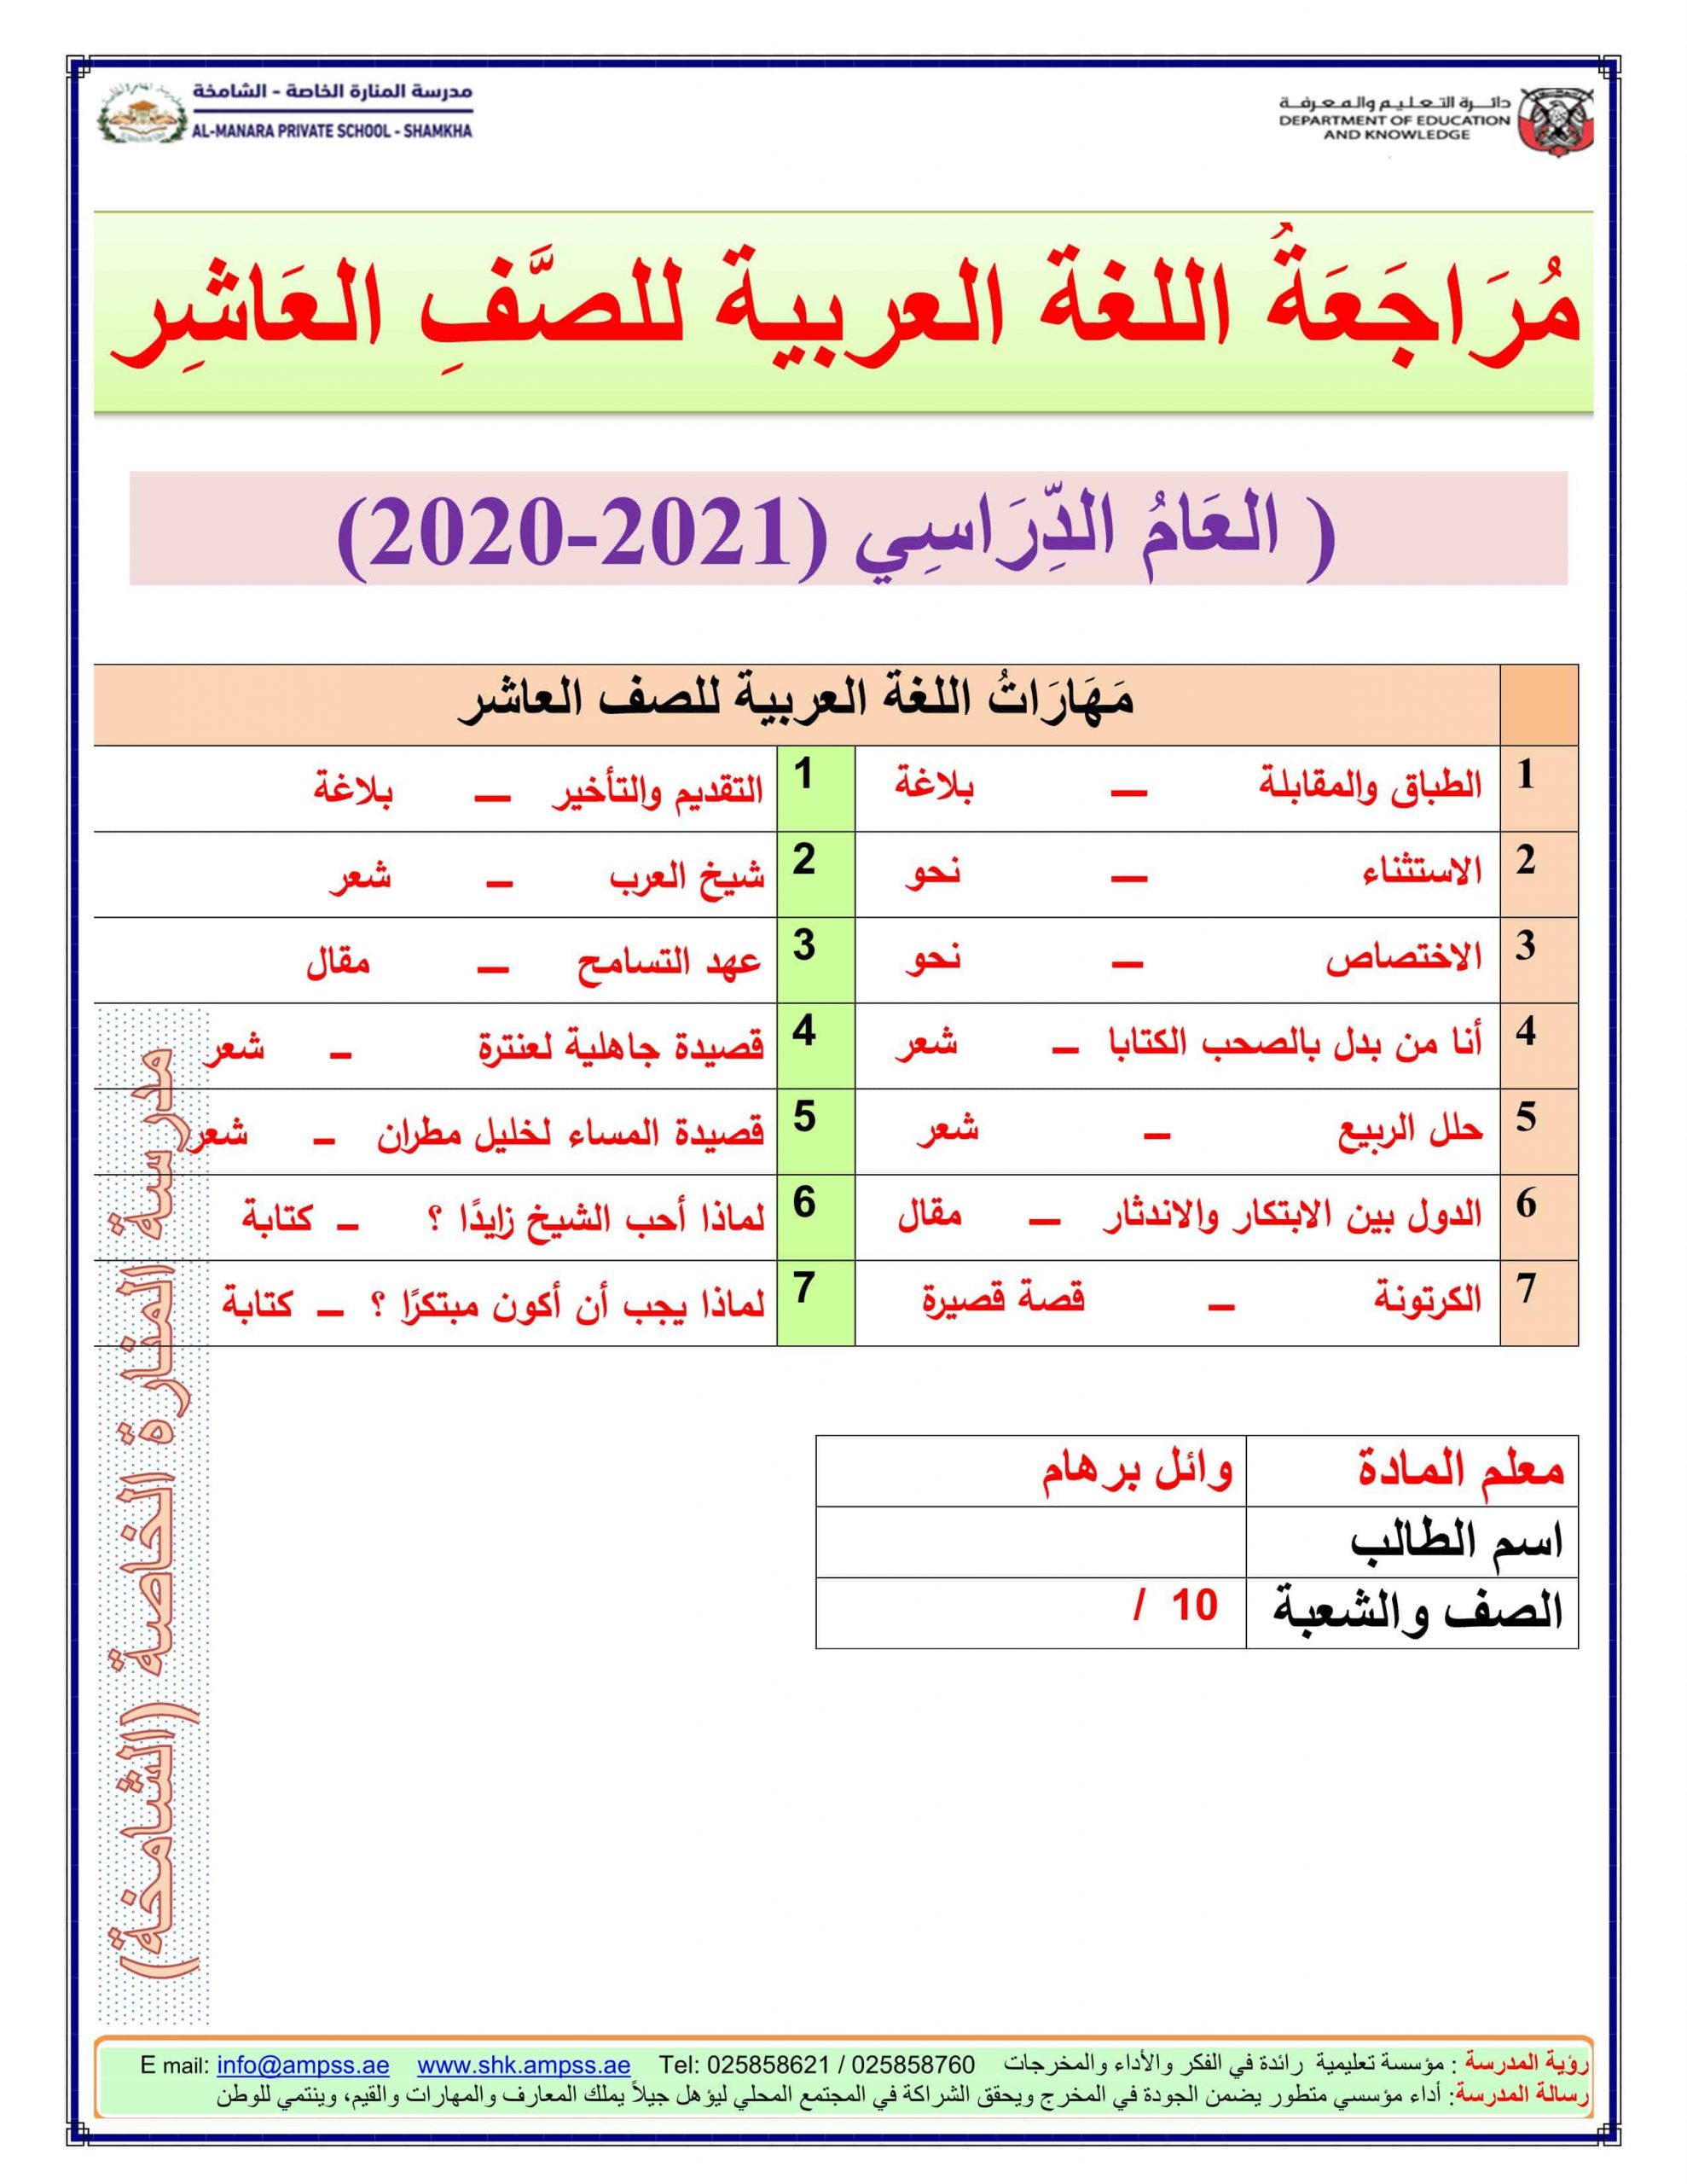 أوراق عمل مراجعة شاملة الفصل الدراسي الثالث الصف العاشر مادة اللغة العربية